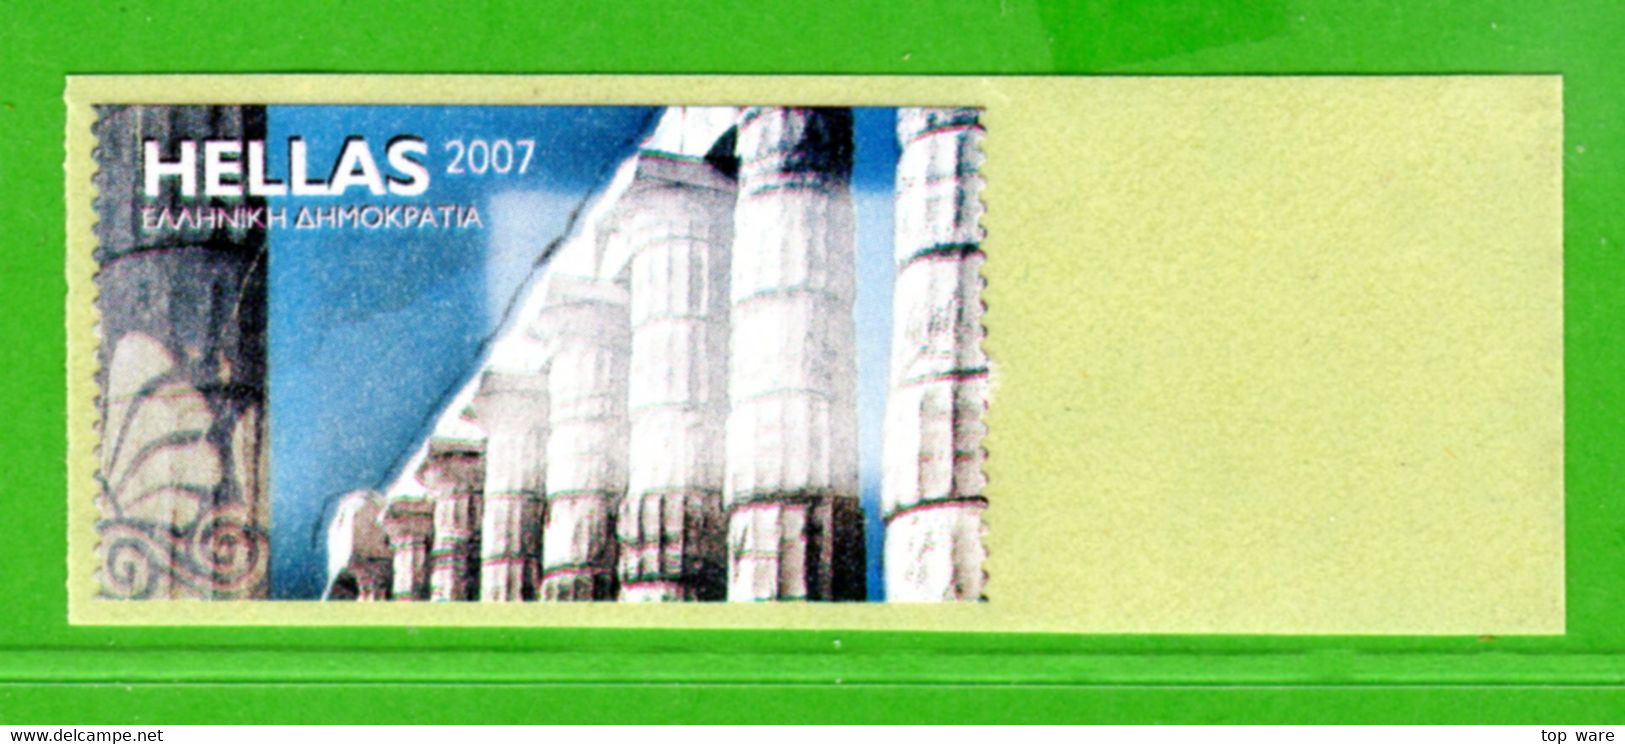 Greece Griechenland HELLAS ATM 23 Temple Colums * Blank Label * Frama Etiquetas Automatenmarken Primtec HERMES - Machine Labels [ATM]